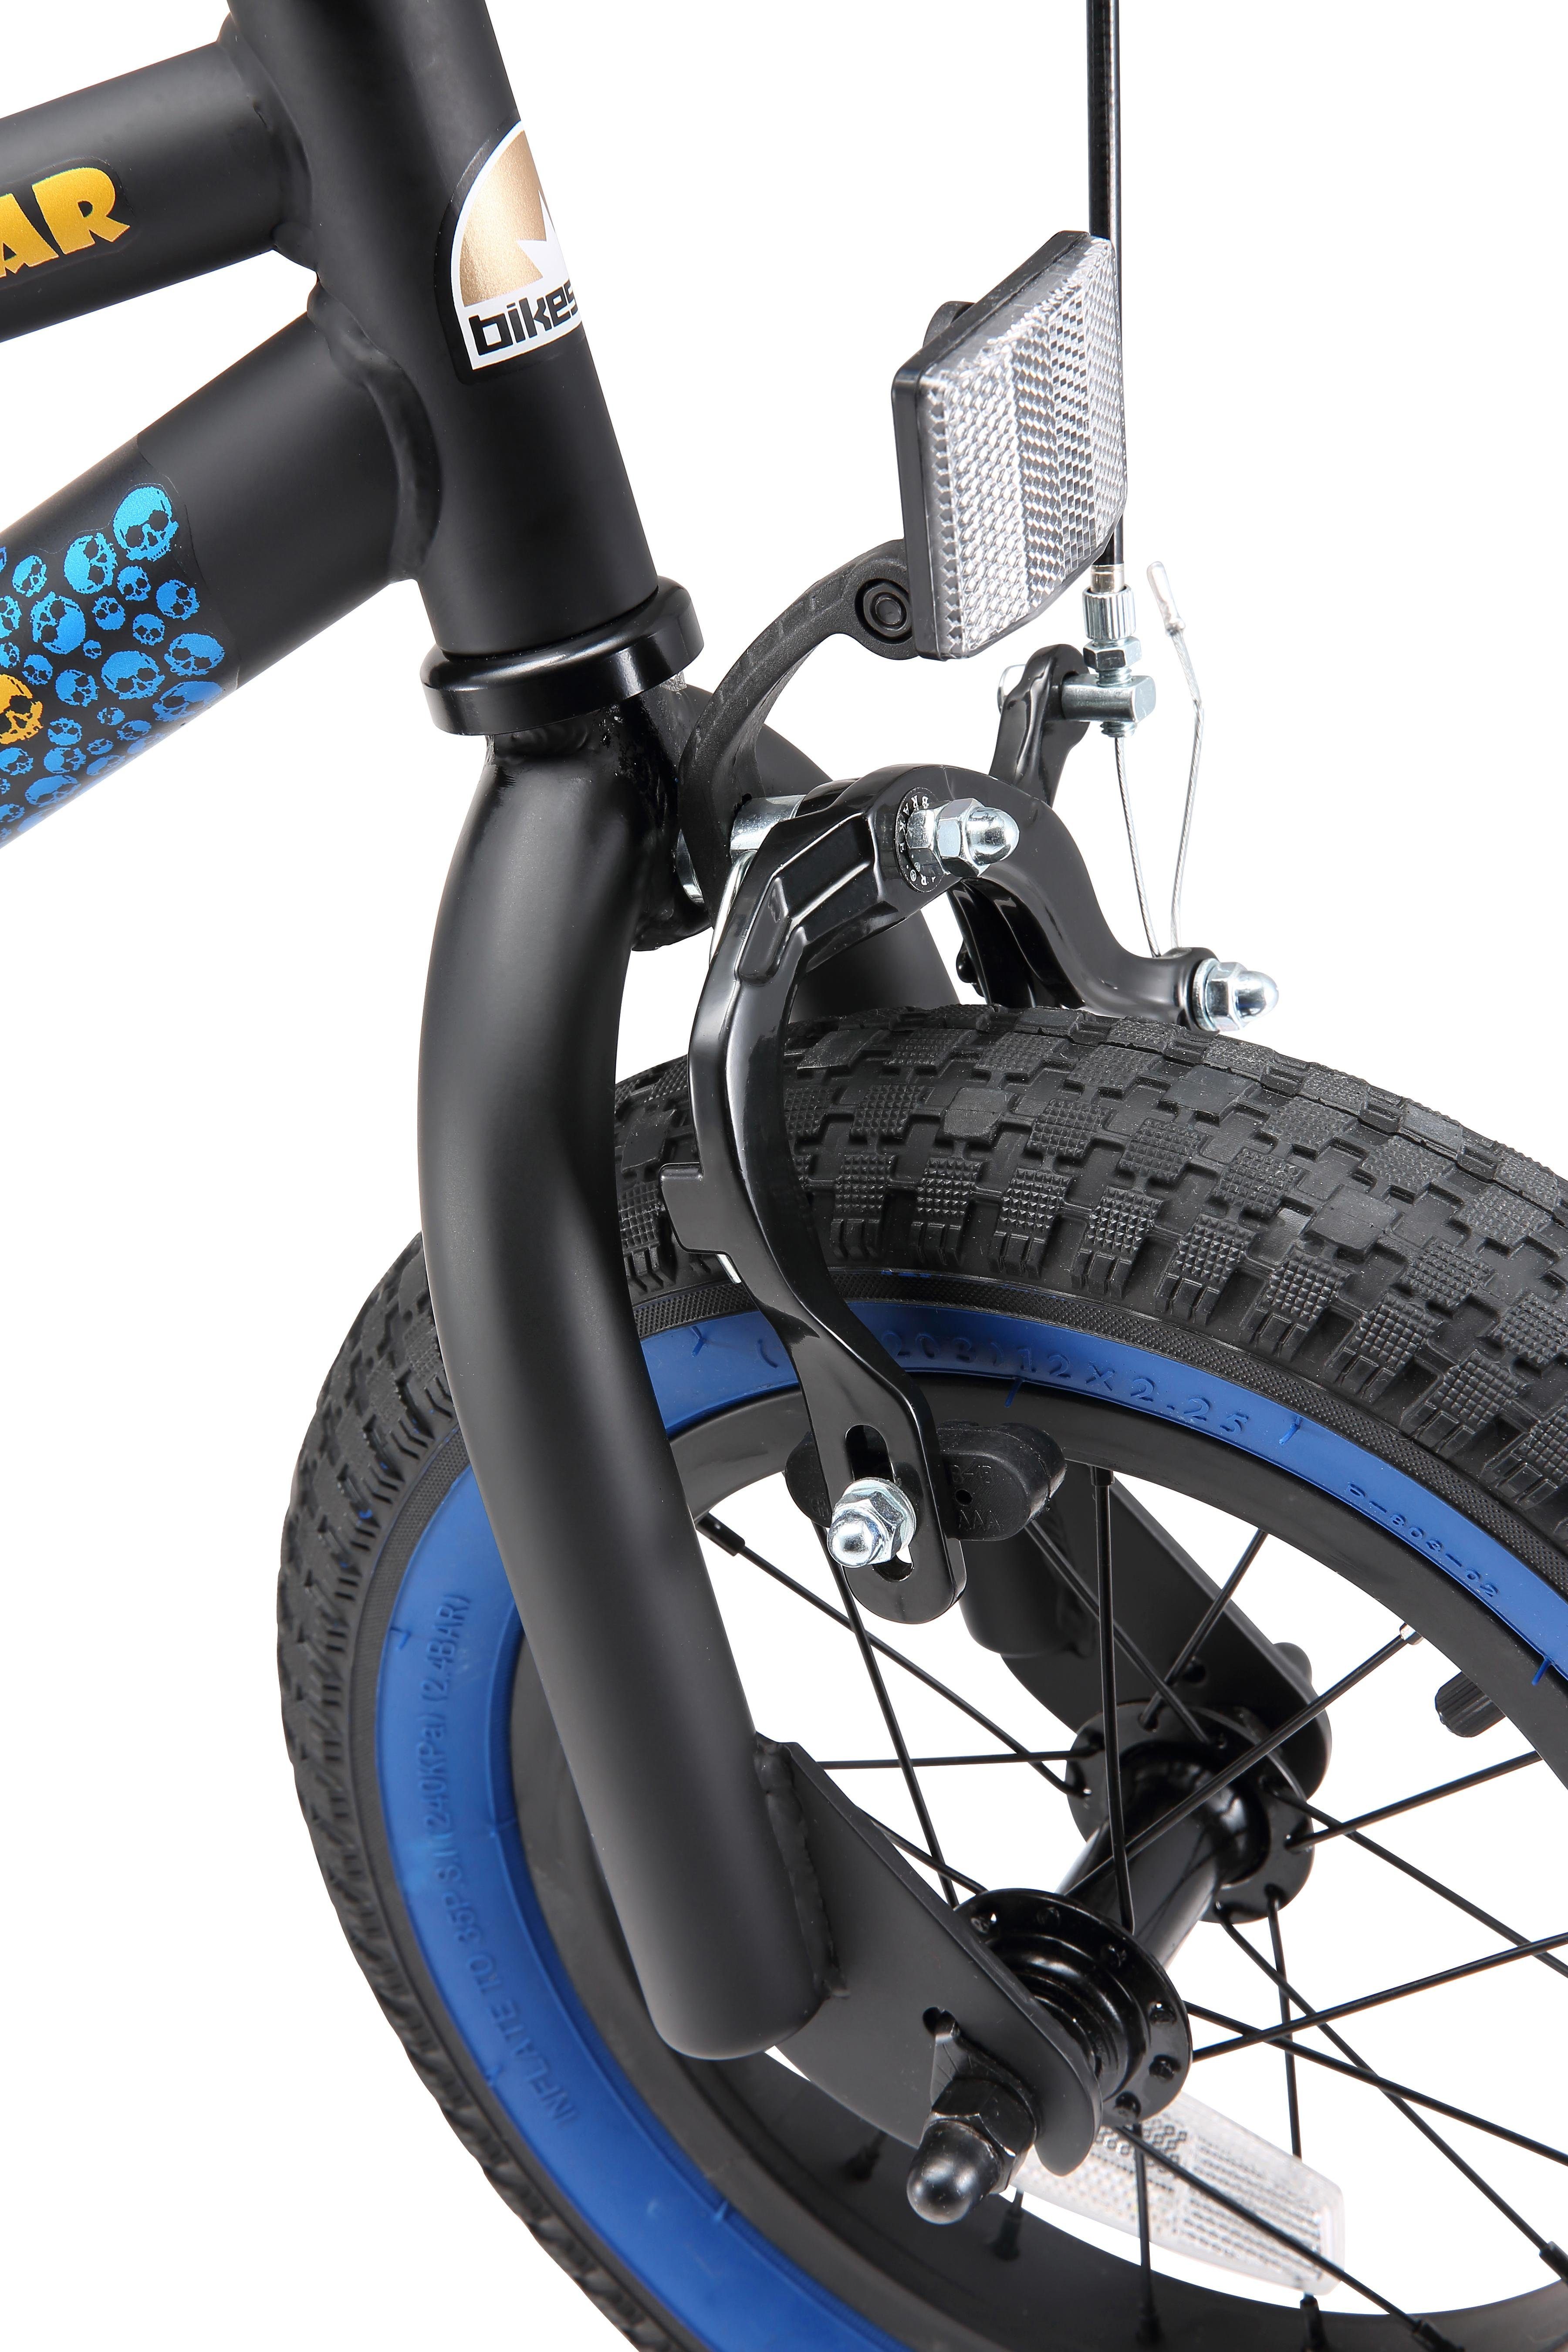 BMX-Rad, 1 Bikestar Gang